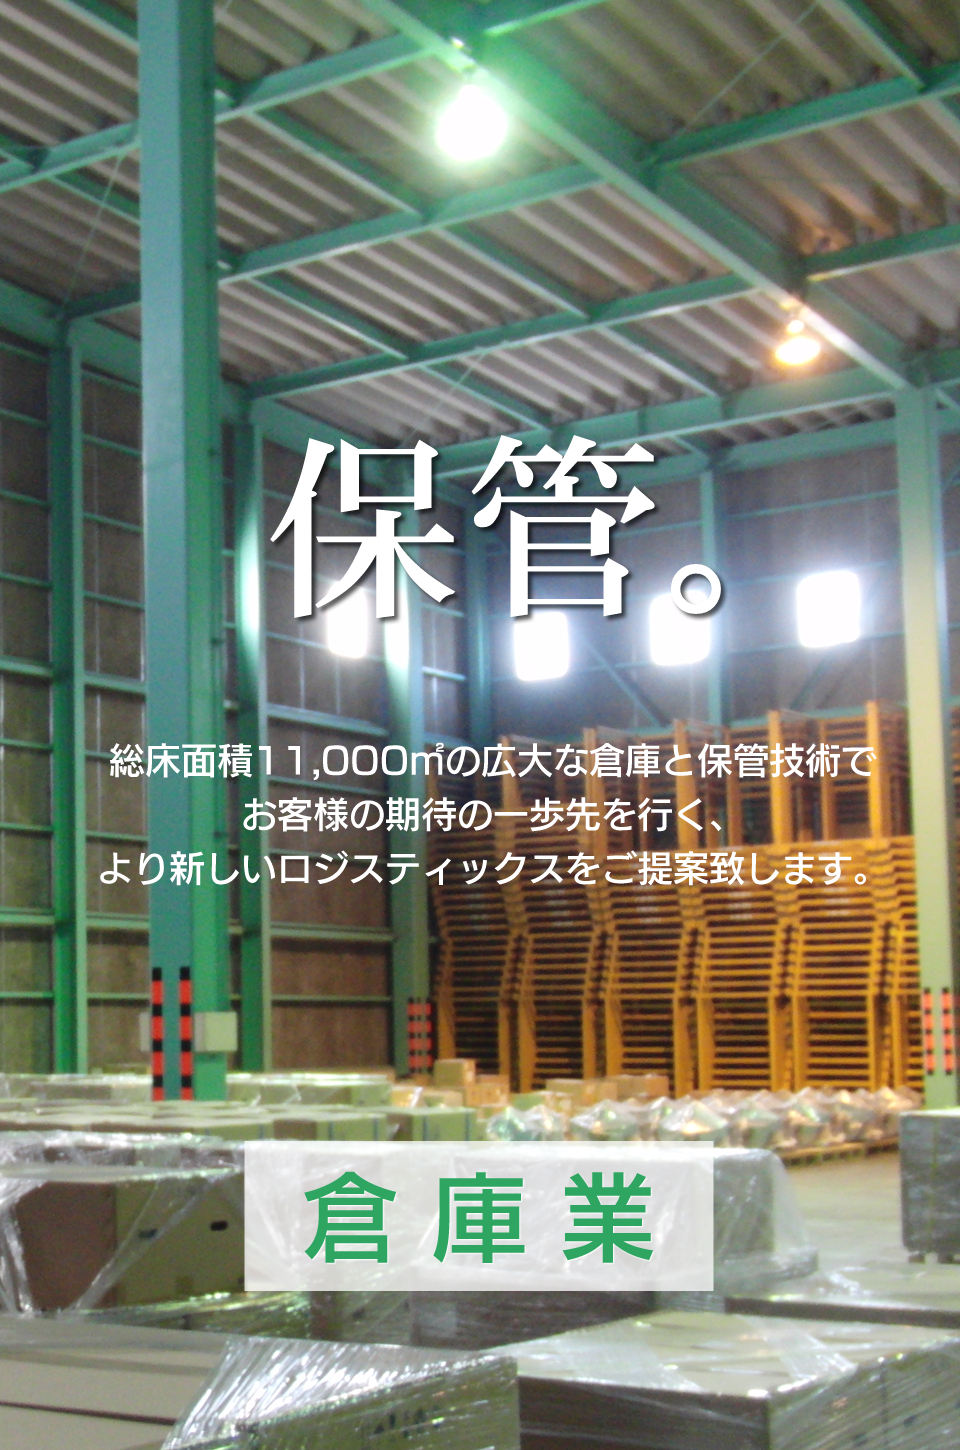 スマートフォン用の株式会社イケゾエ倉庫の画像